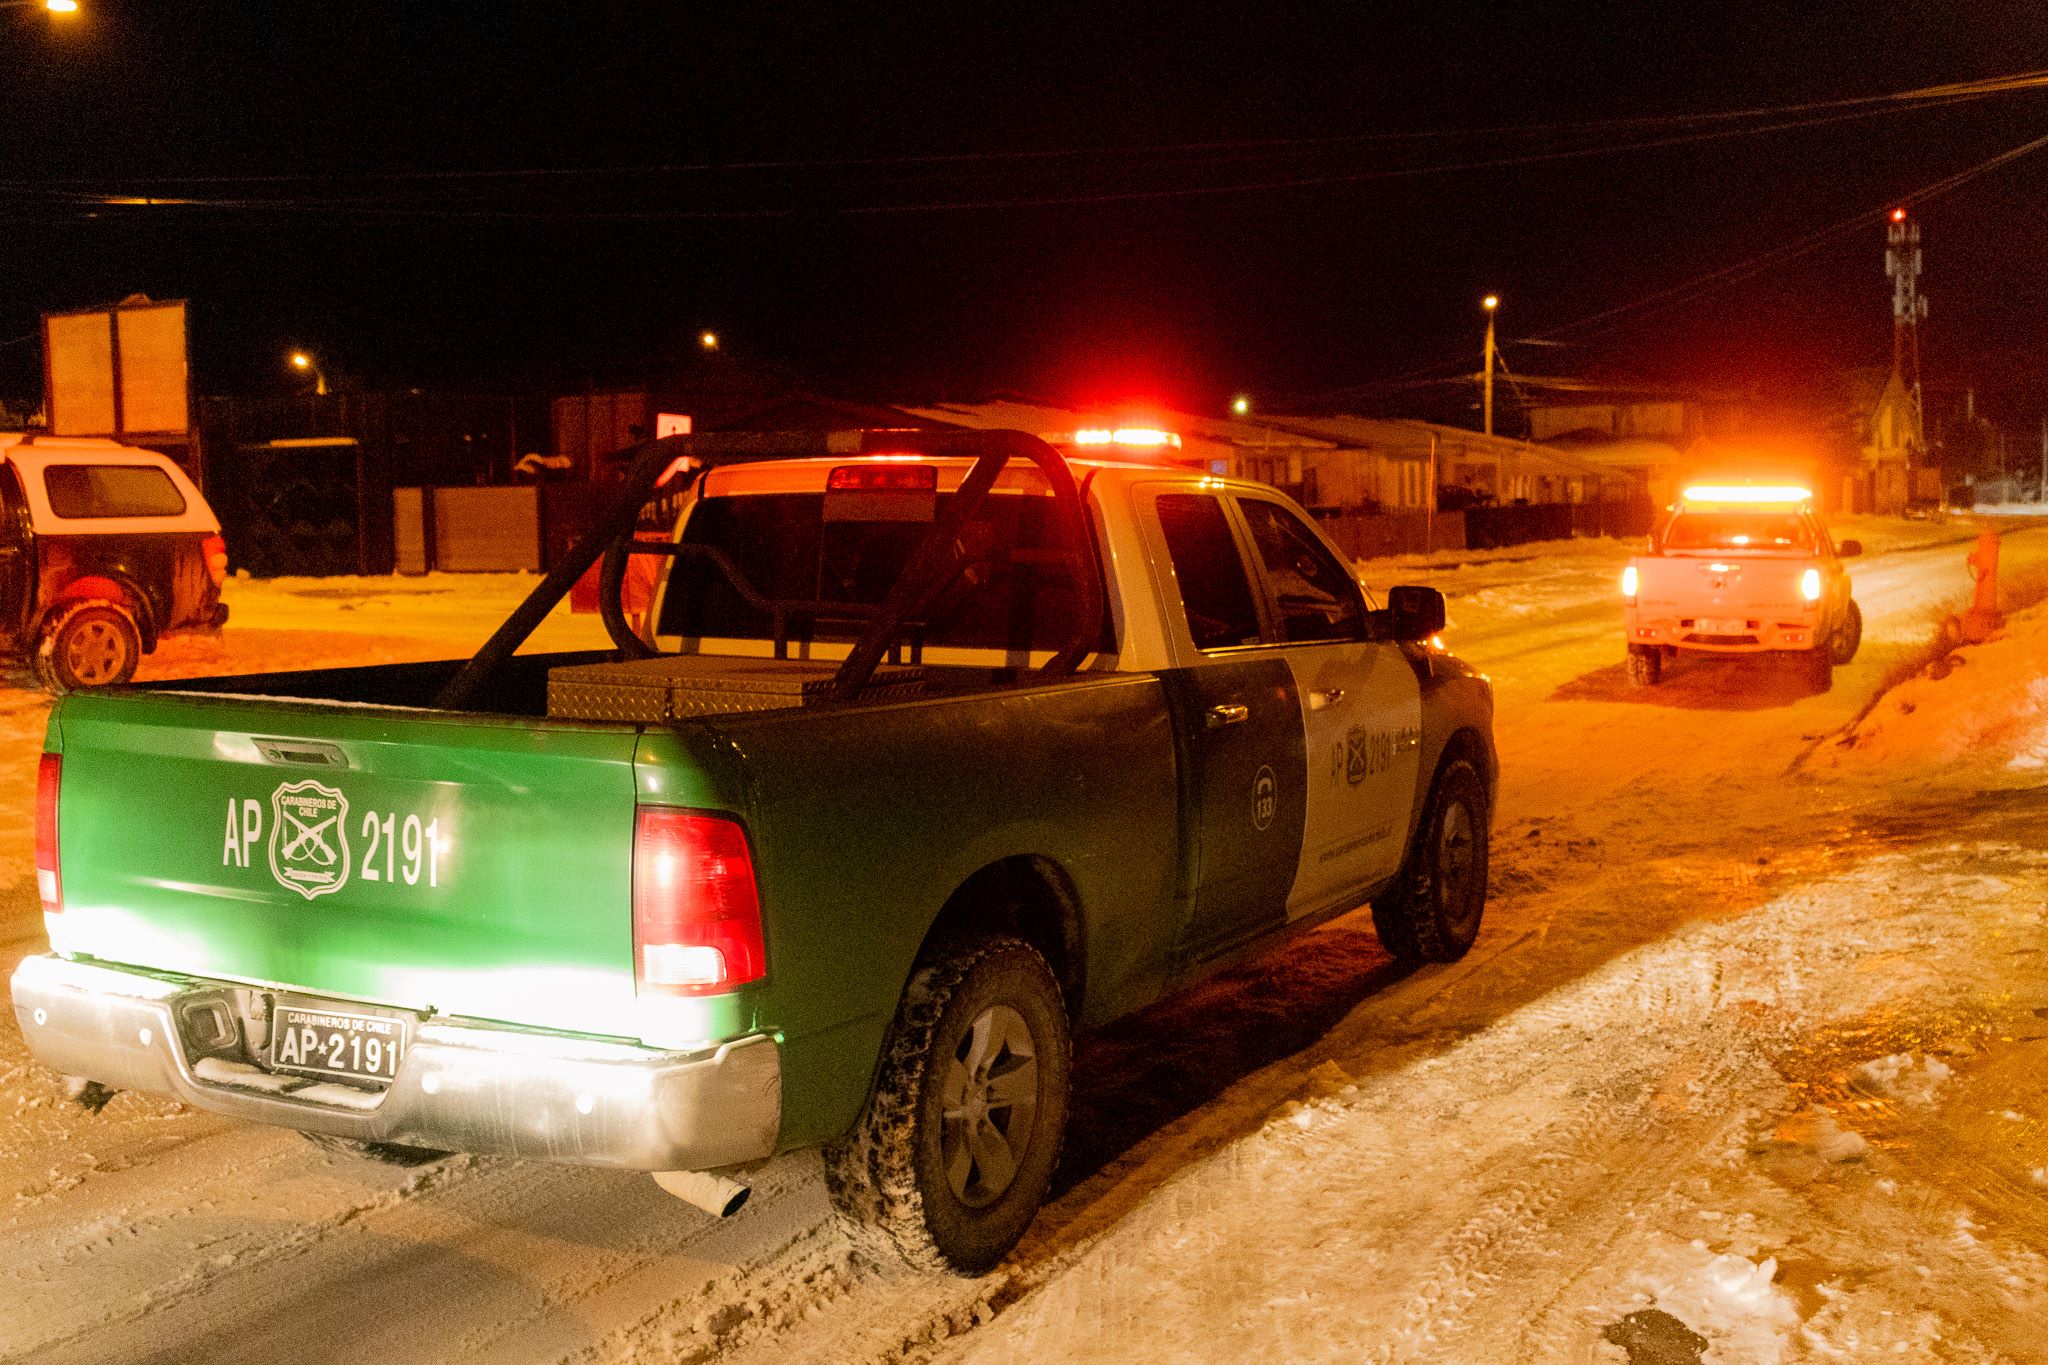 Instituciones y servicios públicos fiscalizan establecimientos nocturnos de Punta Arenas